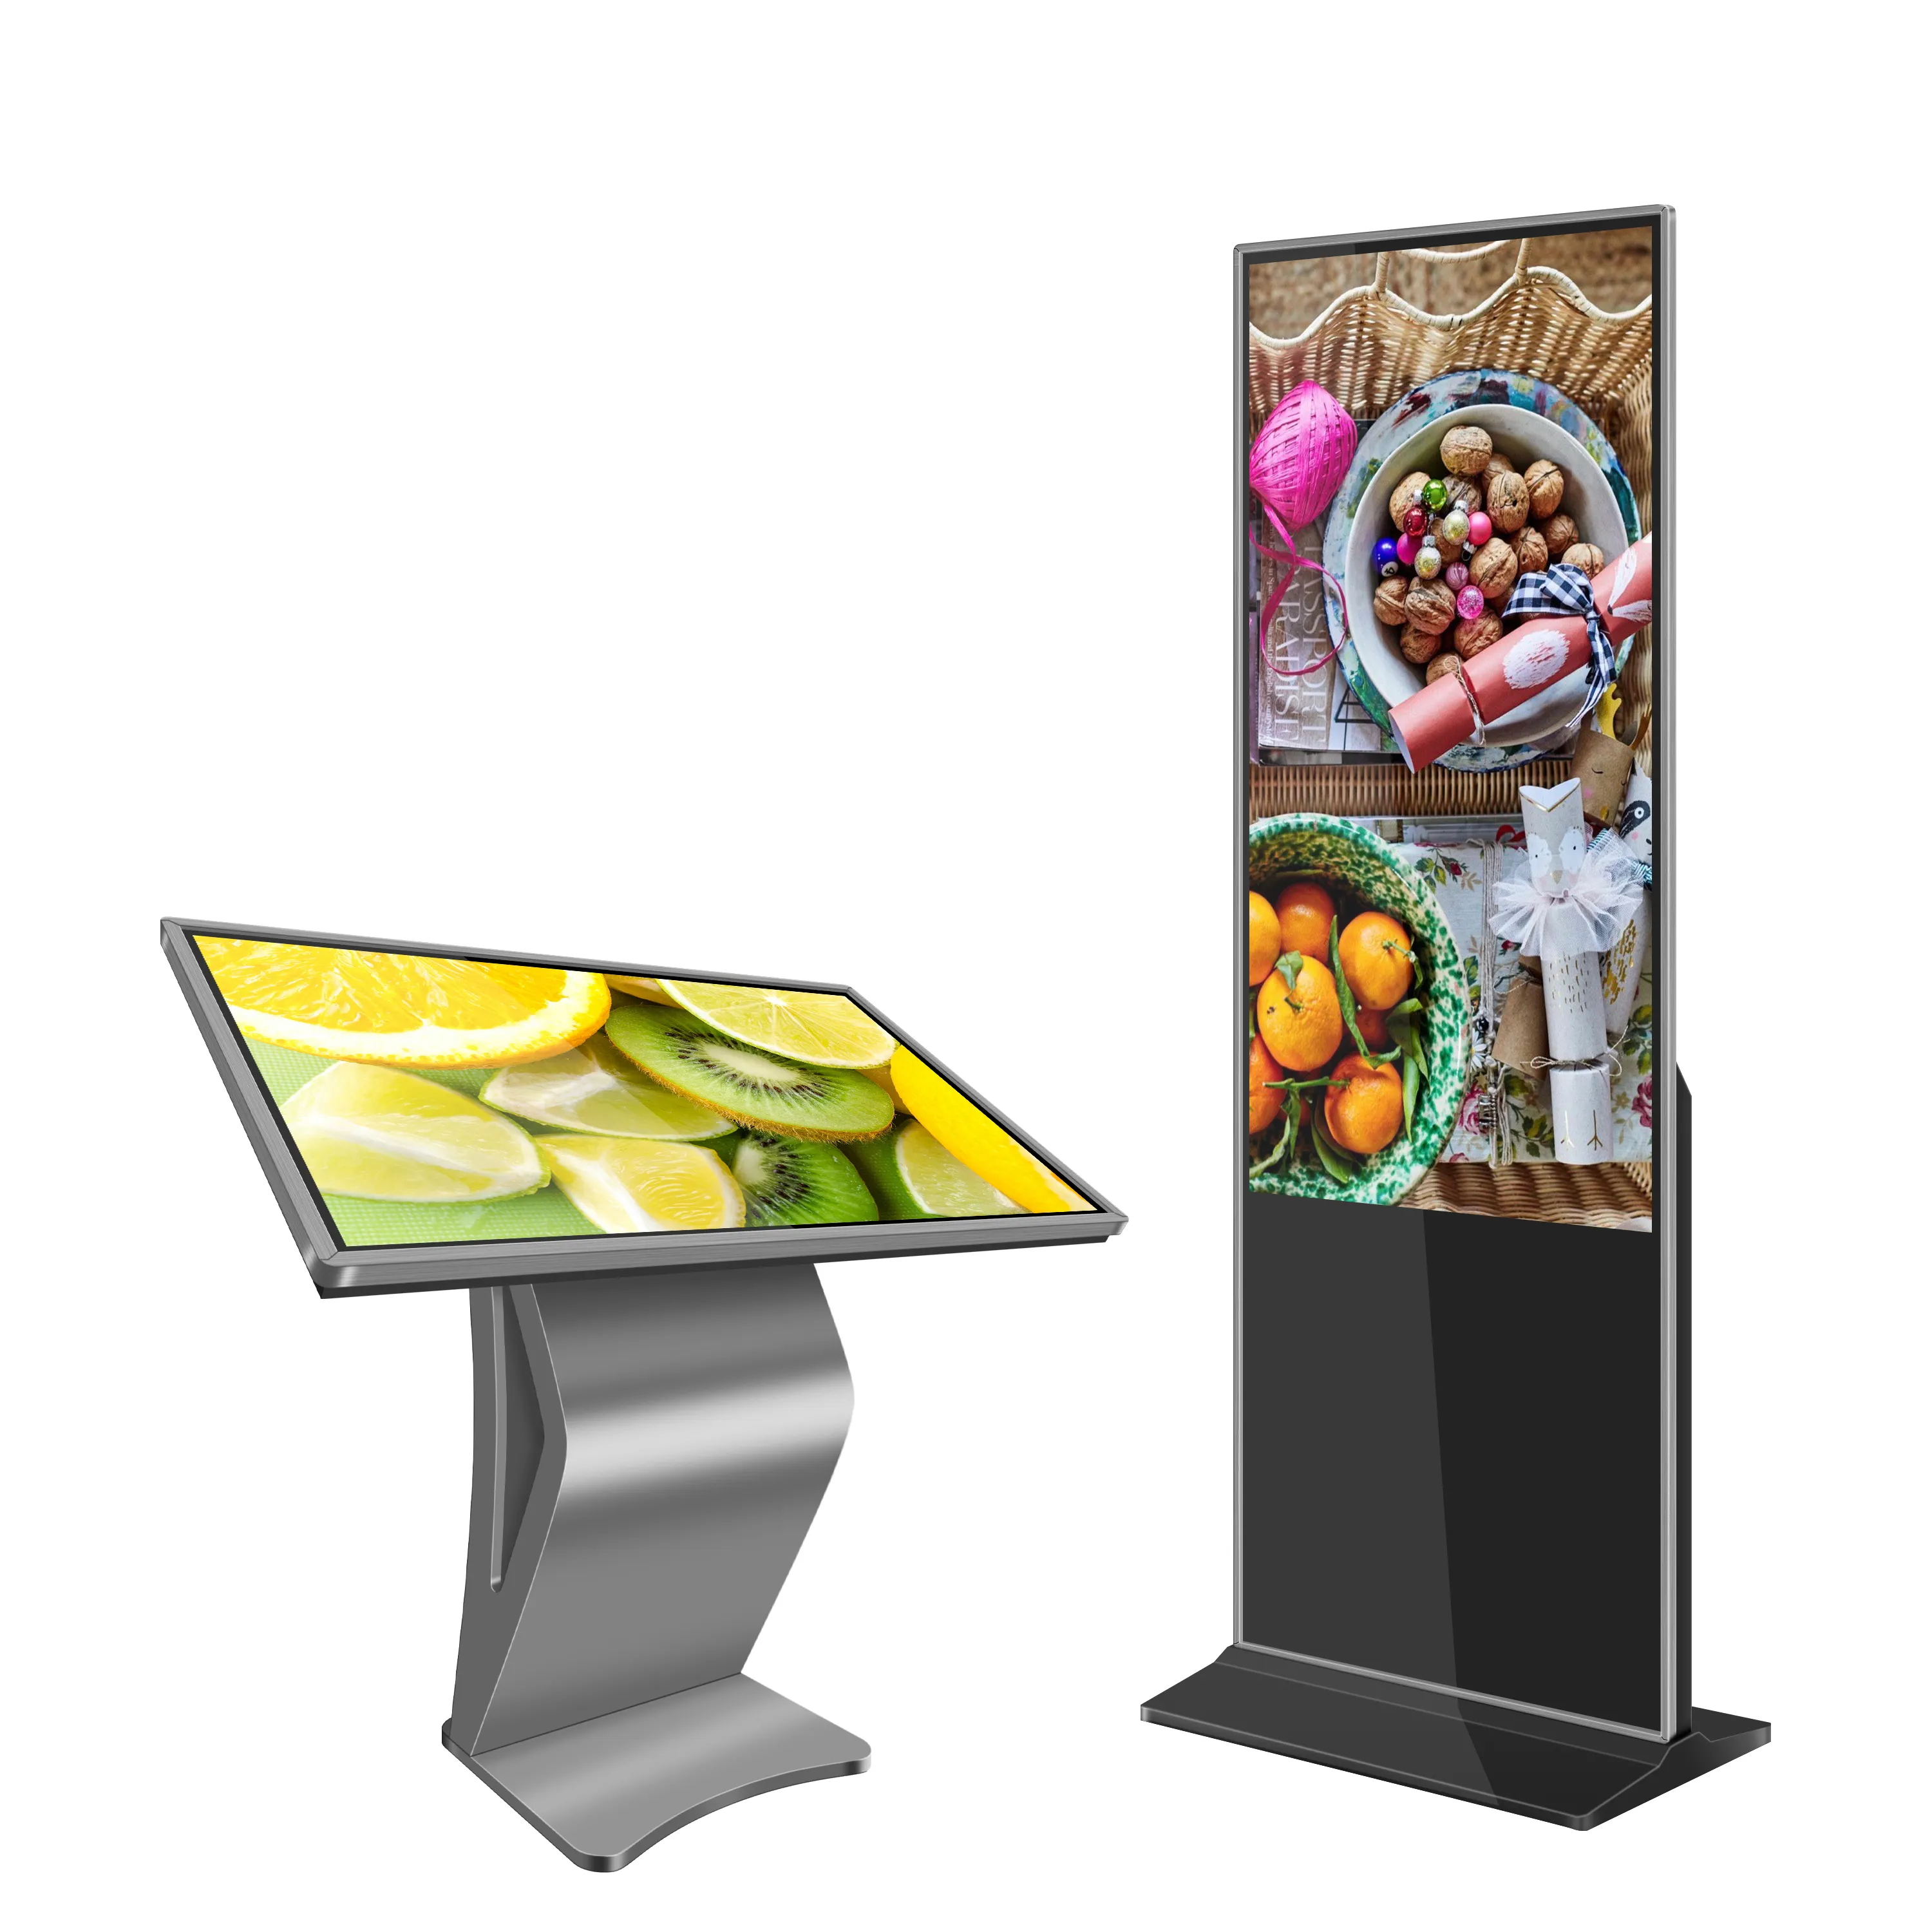 43 Inch Infrarood Touch Informatie Kiosk Lcd-Scherm Voor Reclame Allemaal In Een Verdieping Staan Interactieve Kiosk